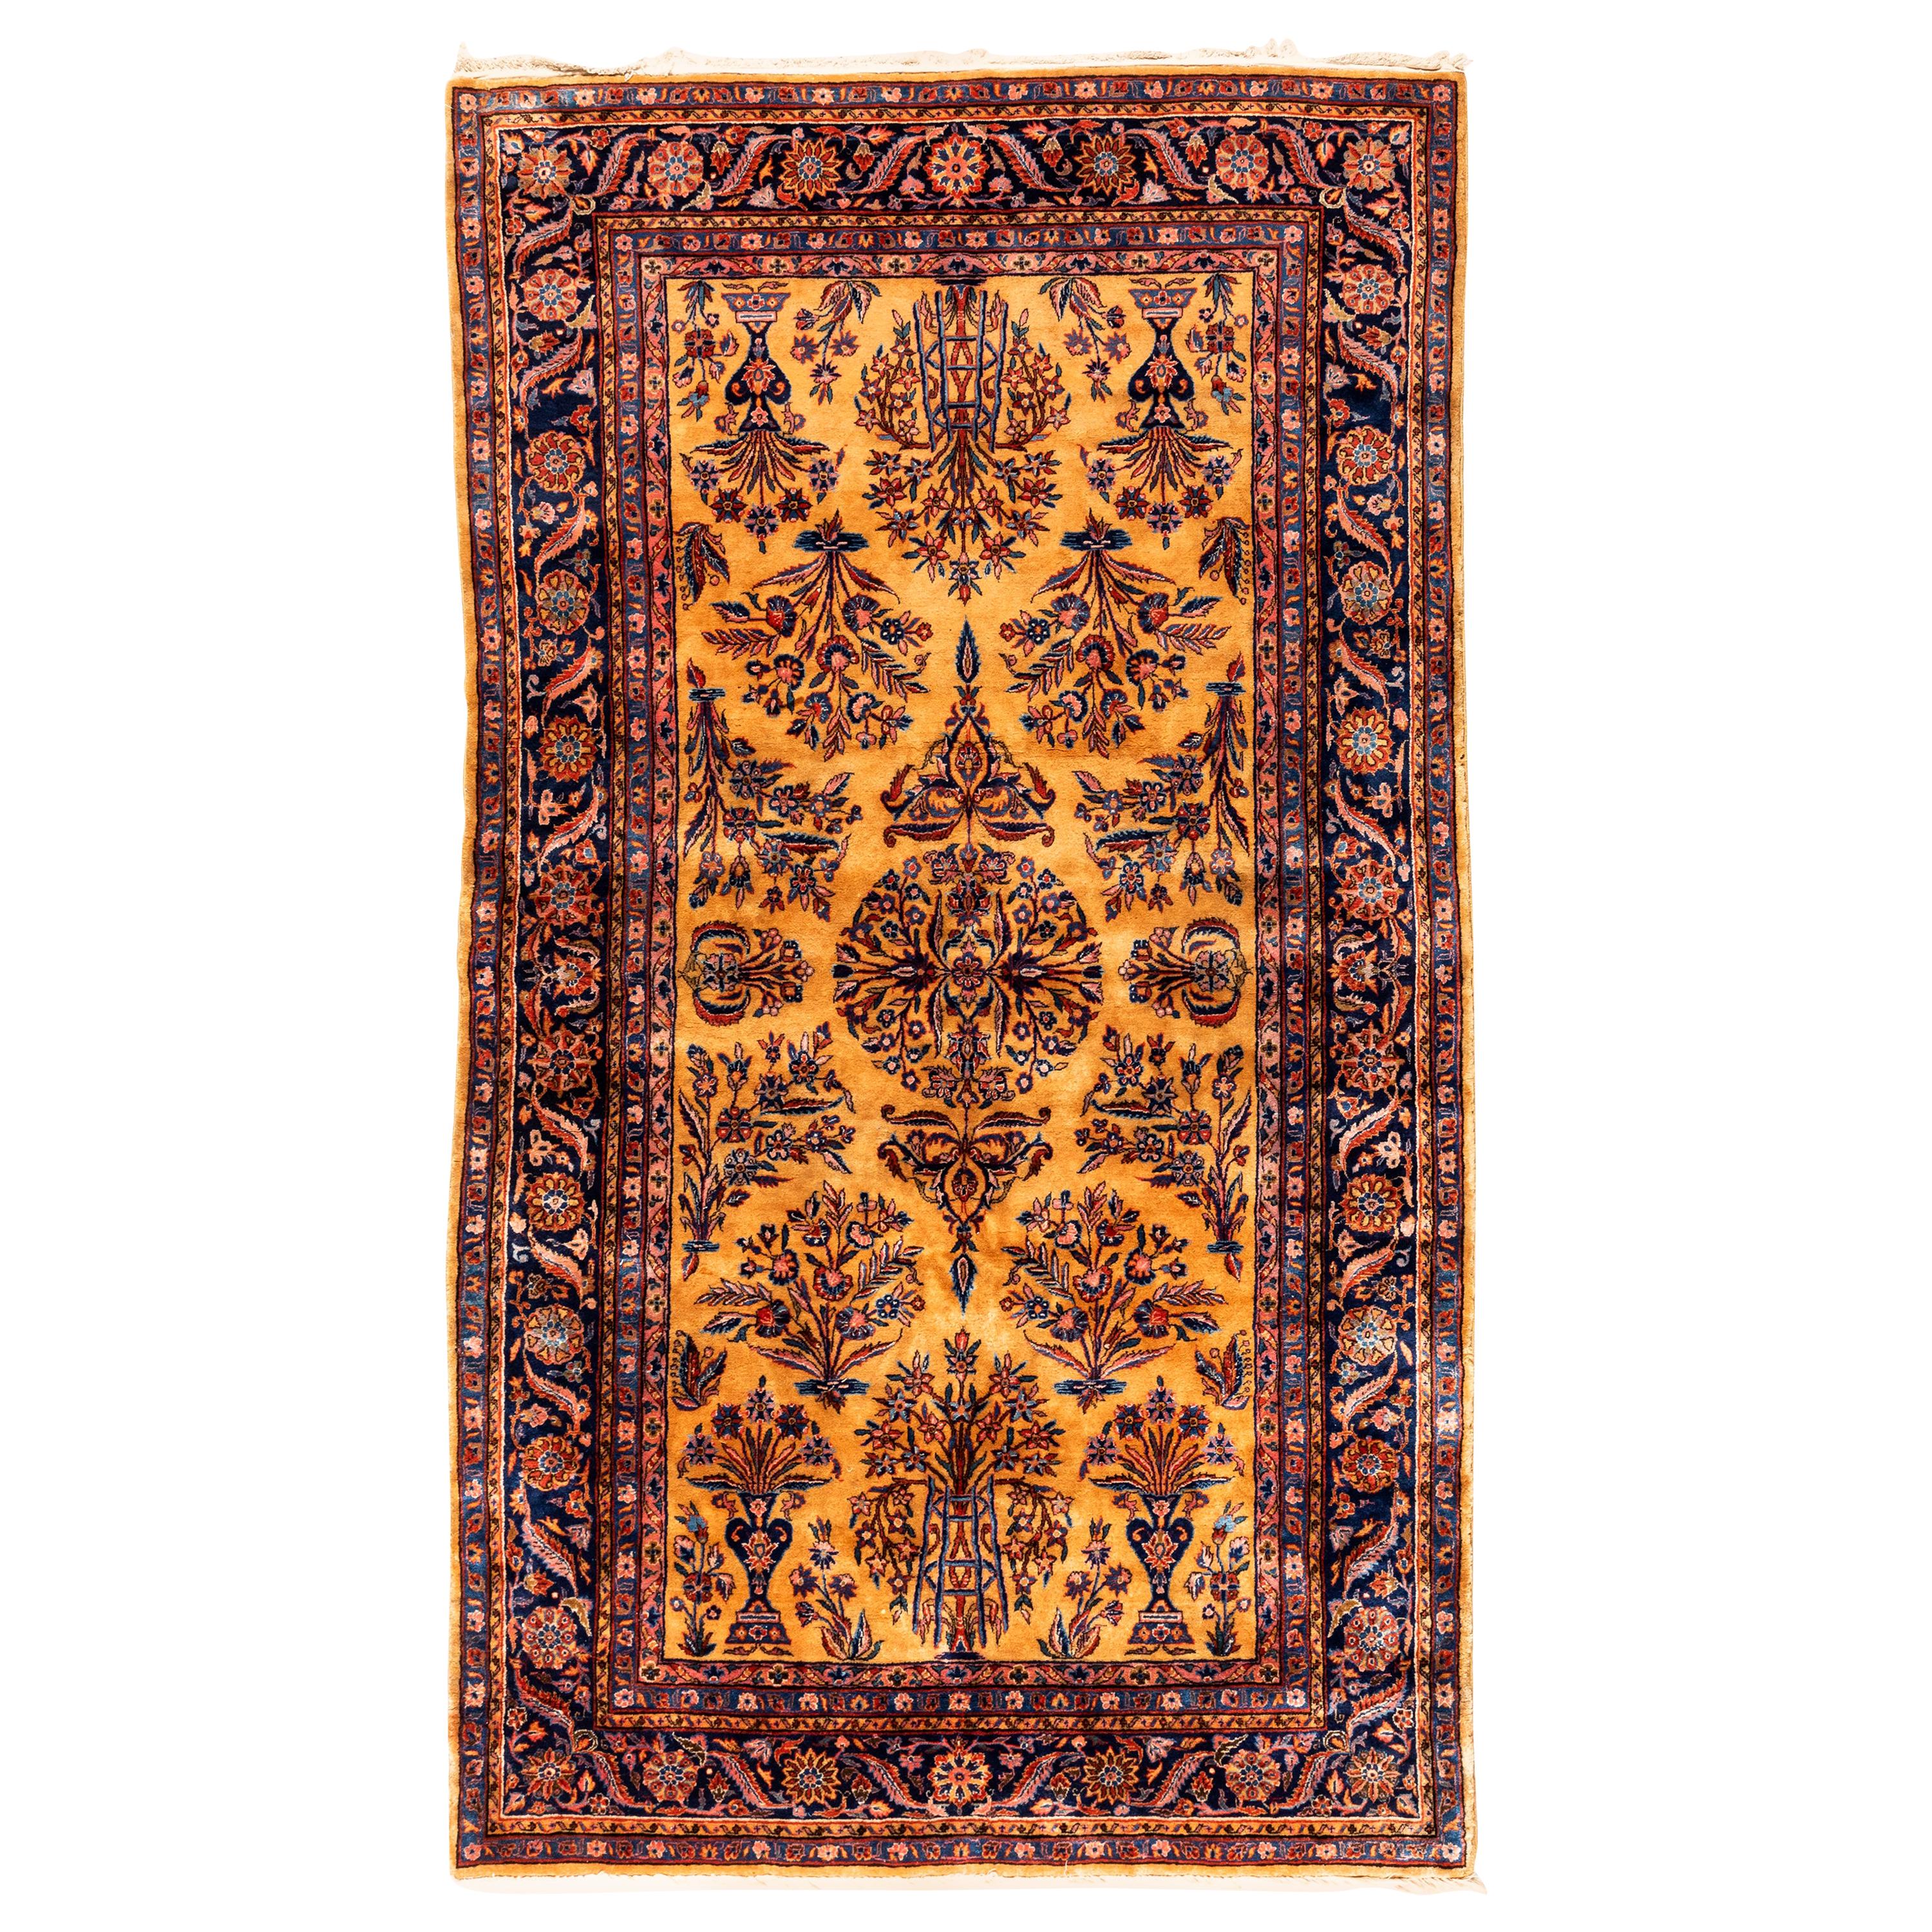 Antiker persischer Kashan-Teppich aus Manchester-Wolle in Gold und Marineblau, um 1880-1900